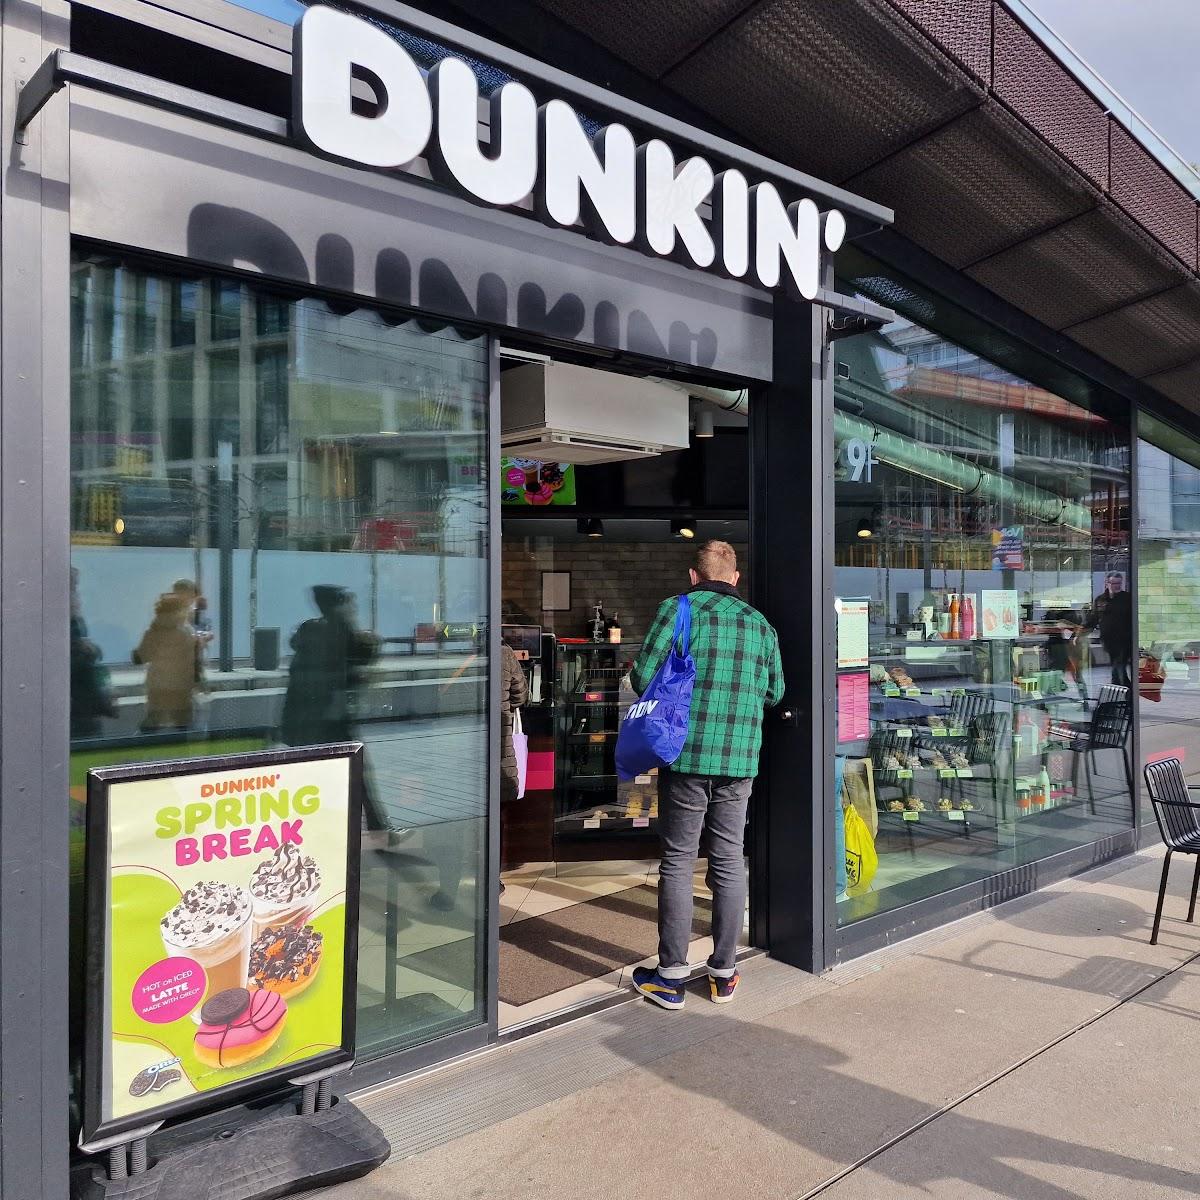 Restaurant "Dunkin Donuts" in Düsseldorf